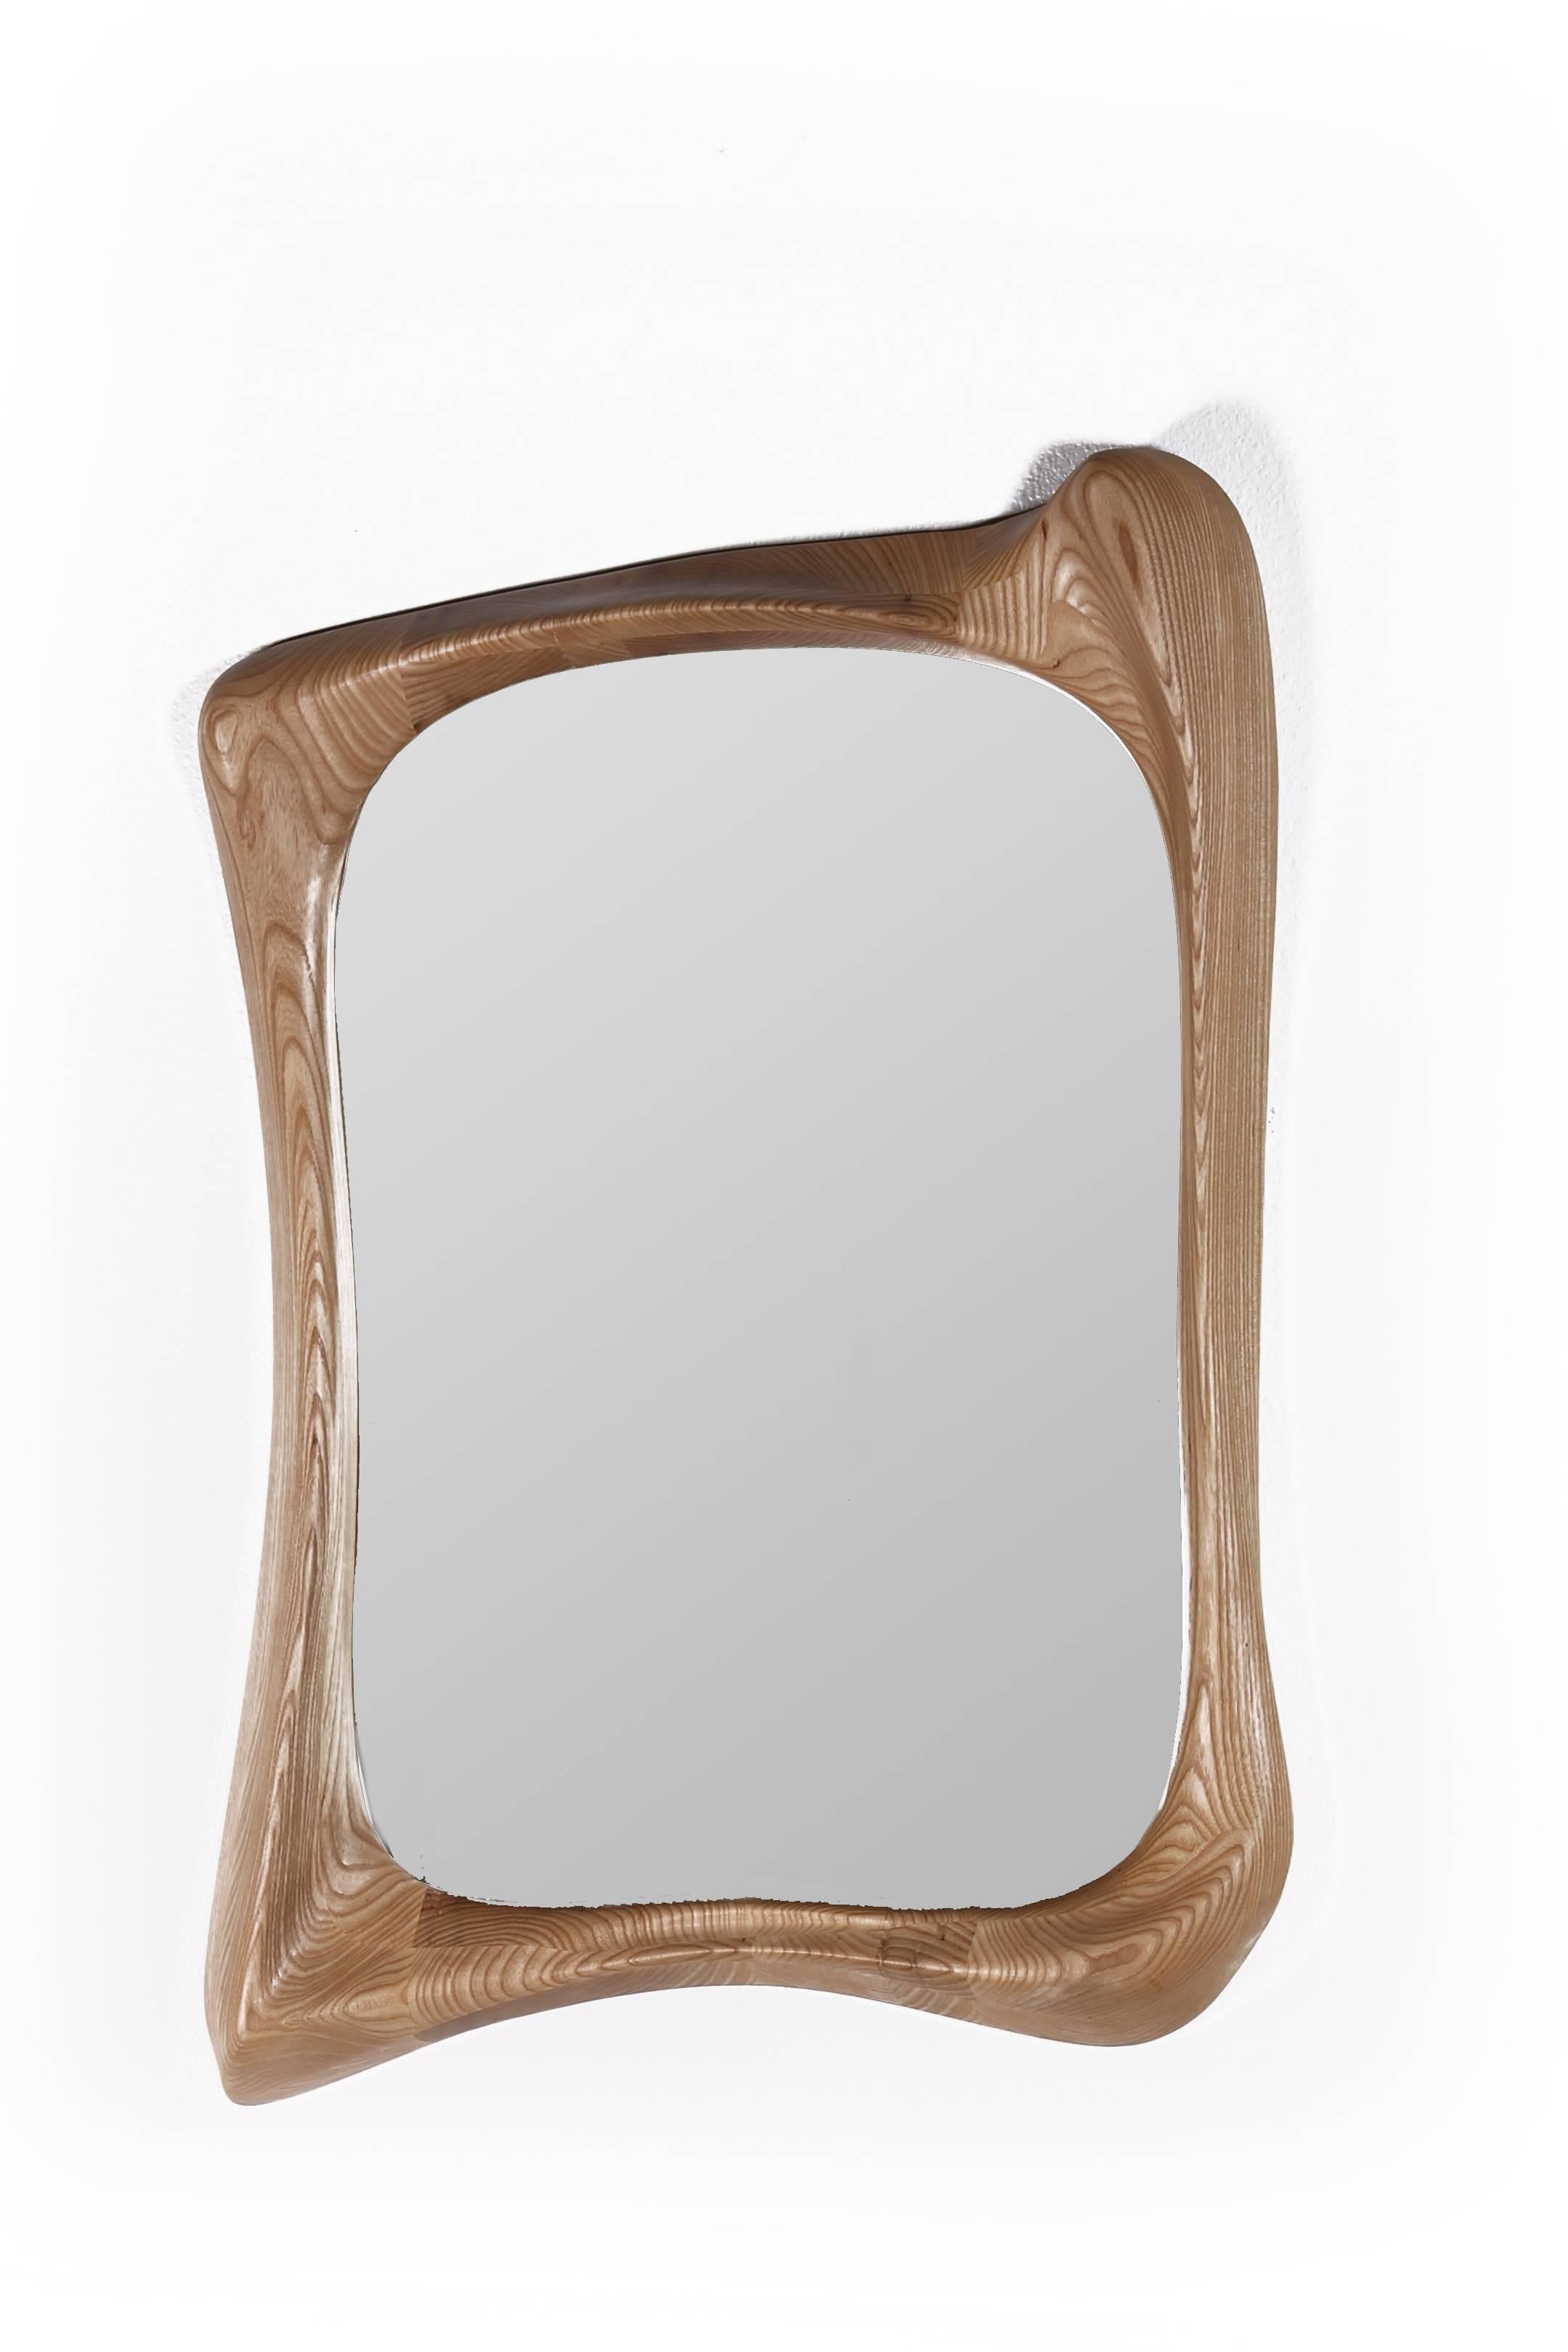 Le miroir Narcissus est un cadre de miroir d'art sculptural futuriste élégant avec une forme dynamique. Nature est fabriqué en bois de frêne massif avec une finition teintée naturelle. Par nature, l'aspect du grain de frêne sera légèrement différent